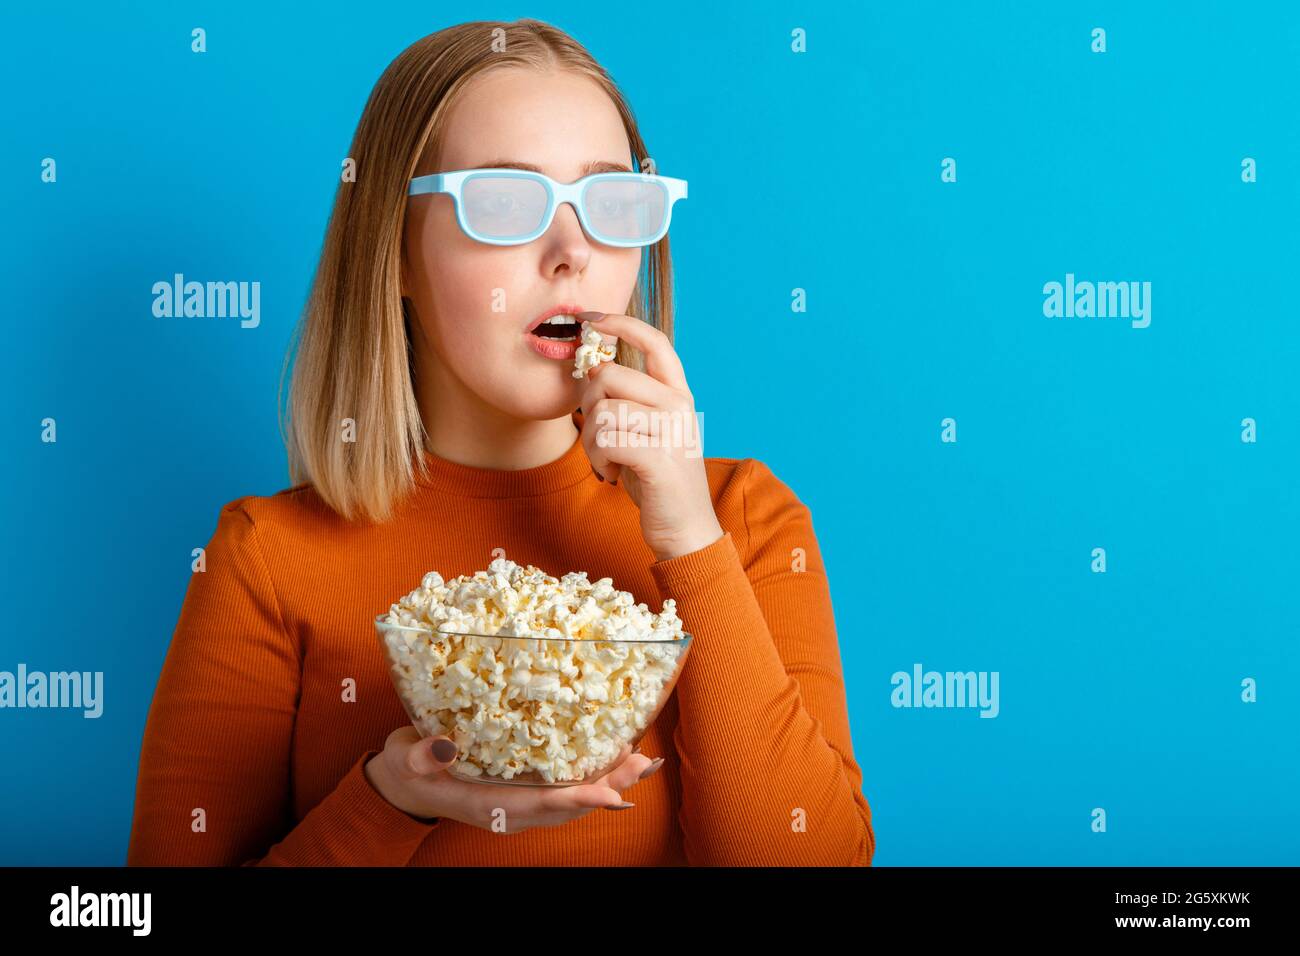 Portrait émotionnel de la jeune femme dans des lunettes de cinéma regardant un film 3d. Une jeune fille très enthousiaste qui regarde un film en lunettes mange du pop-corn avec un espace pour copier Banque D'Images